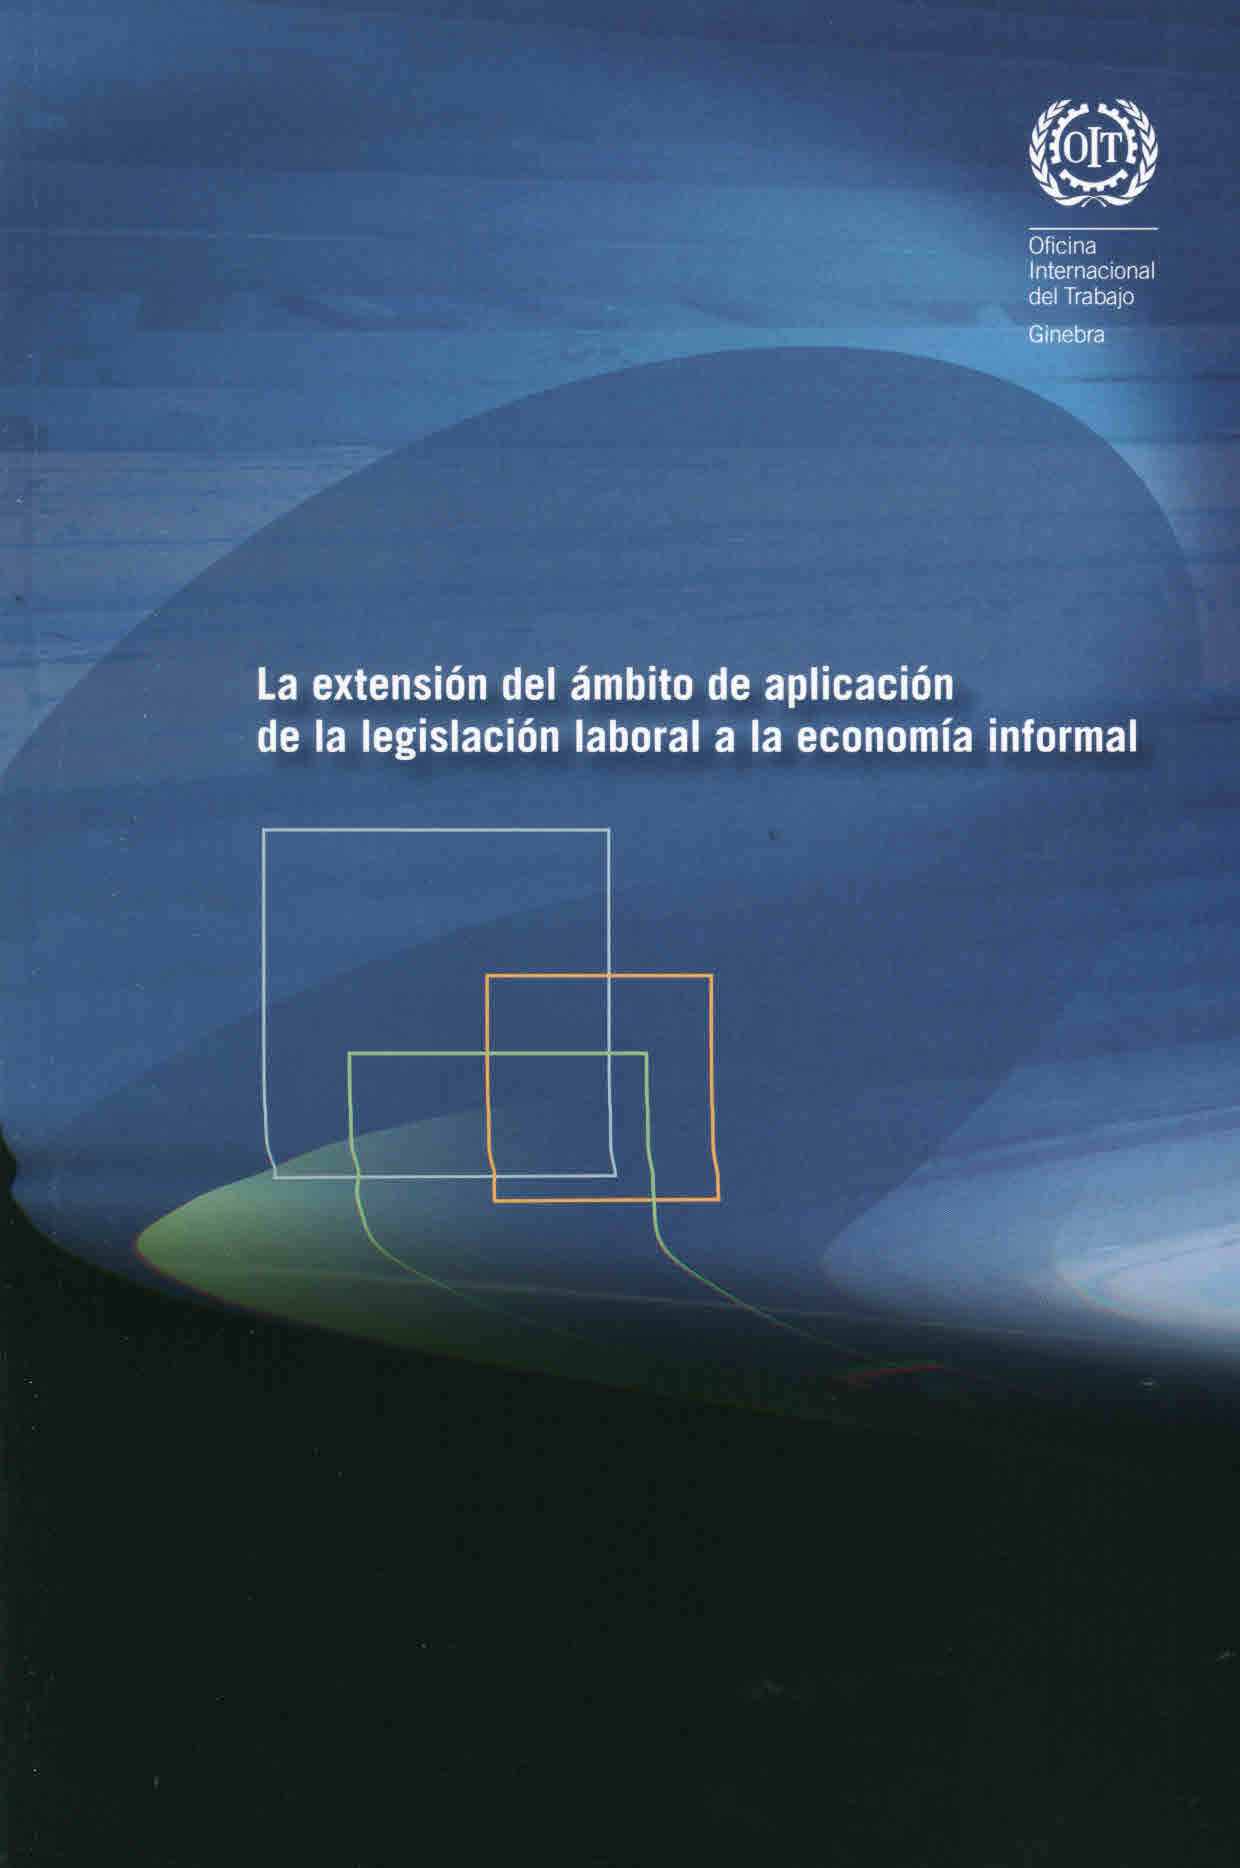 La extensión del ámbito de aplicación laboral a la economía informal. Compendio de comentarios de los órganos de control de la OIT relativos a la economías informal